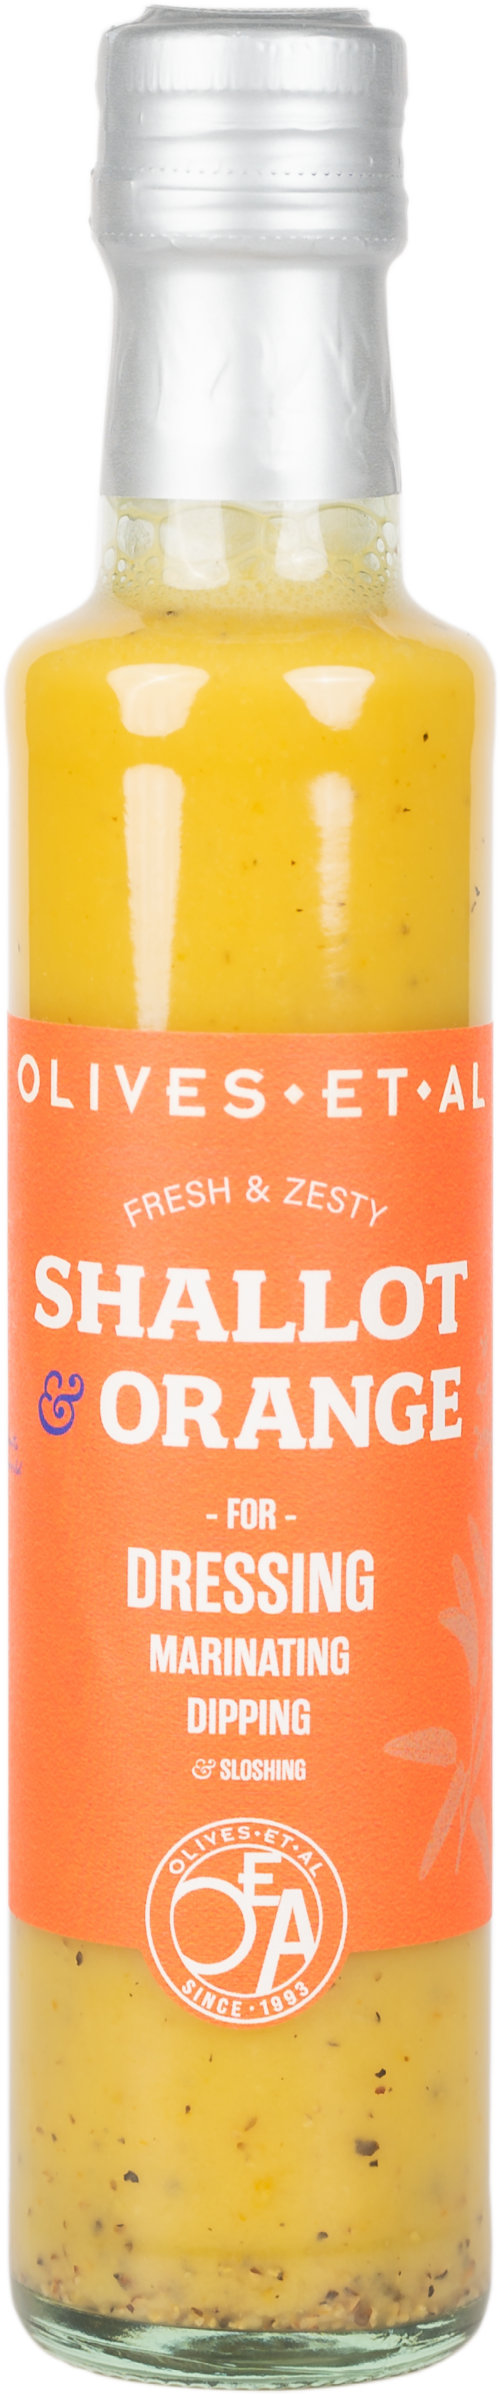 OLIVES ET AL Shallot & Orange Dressing & Marinade 250ml